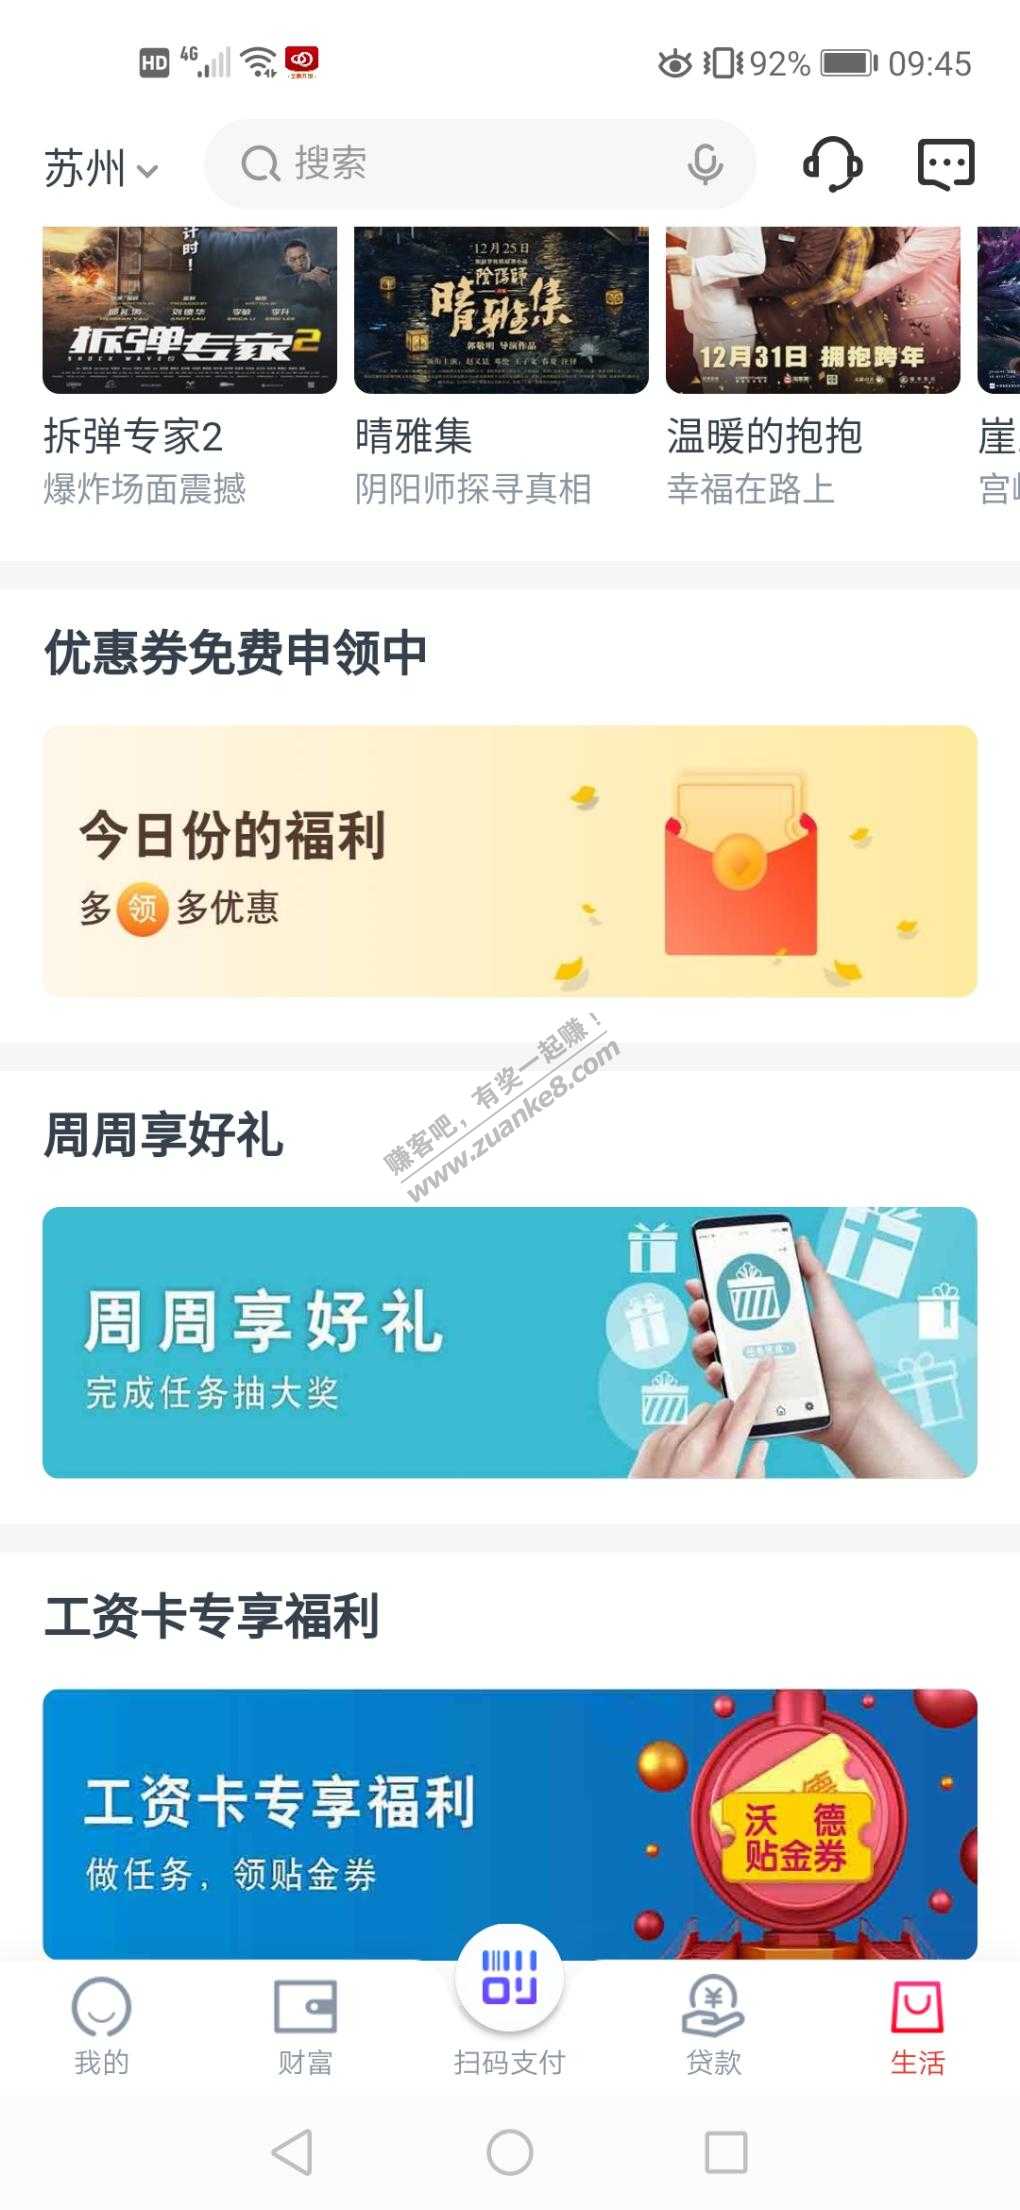 交通银行app苏州专区-低保又有了-周周-惠小助(52huixz.com)